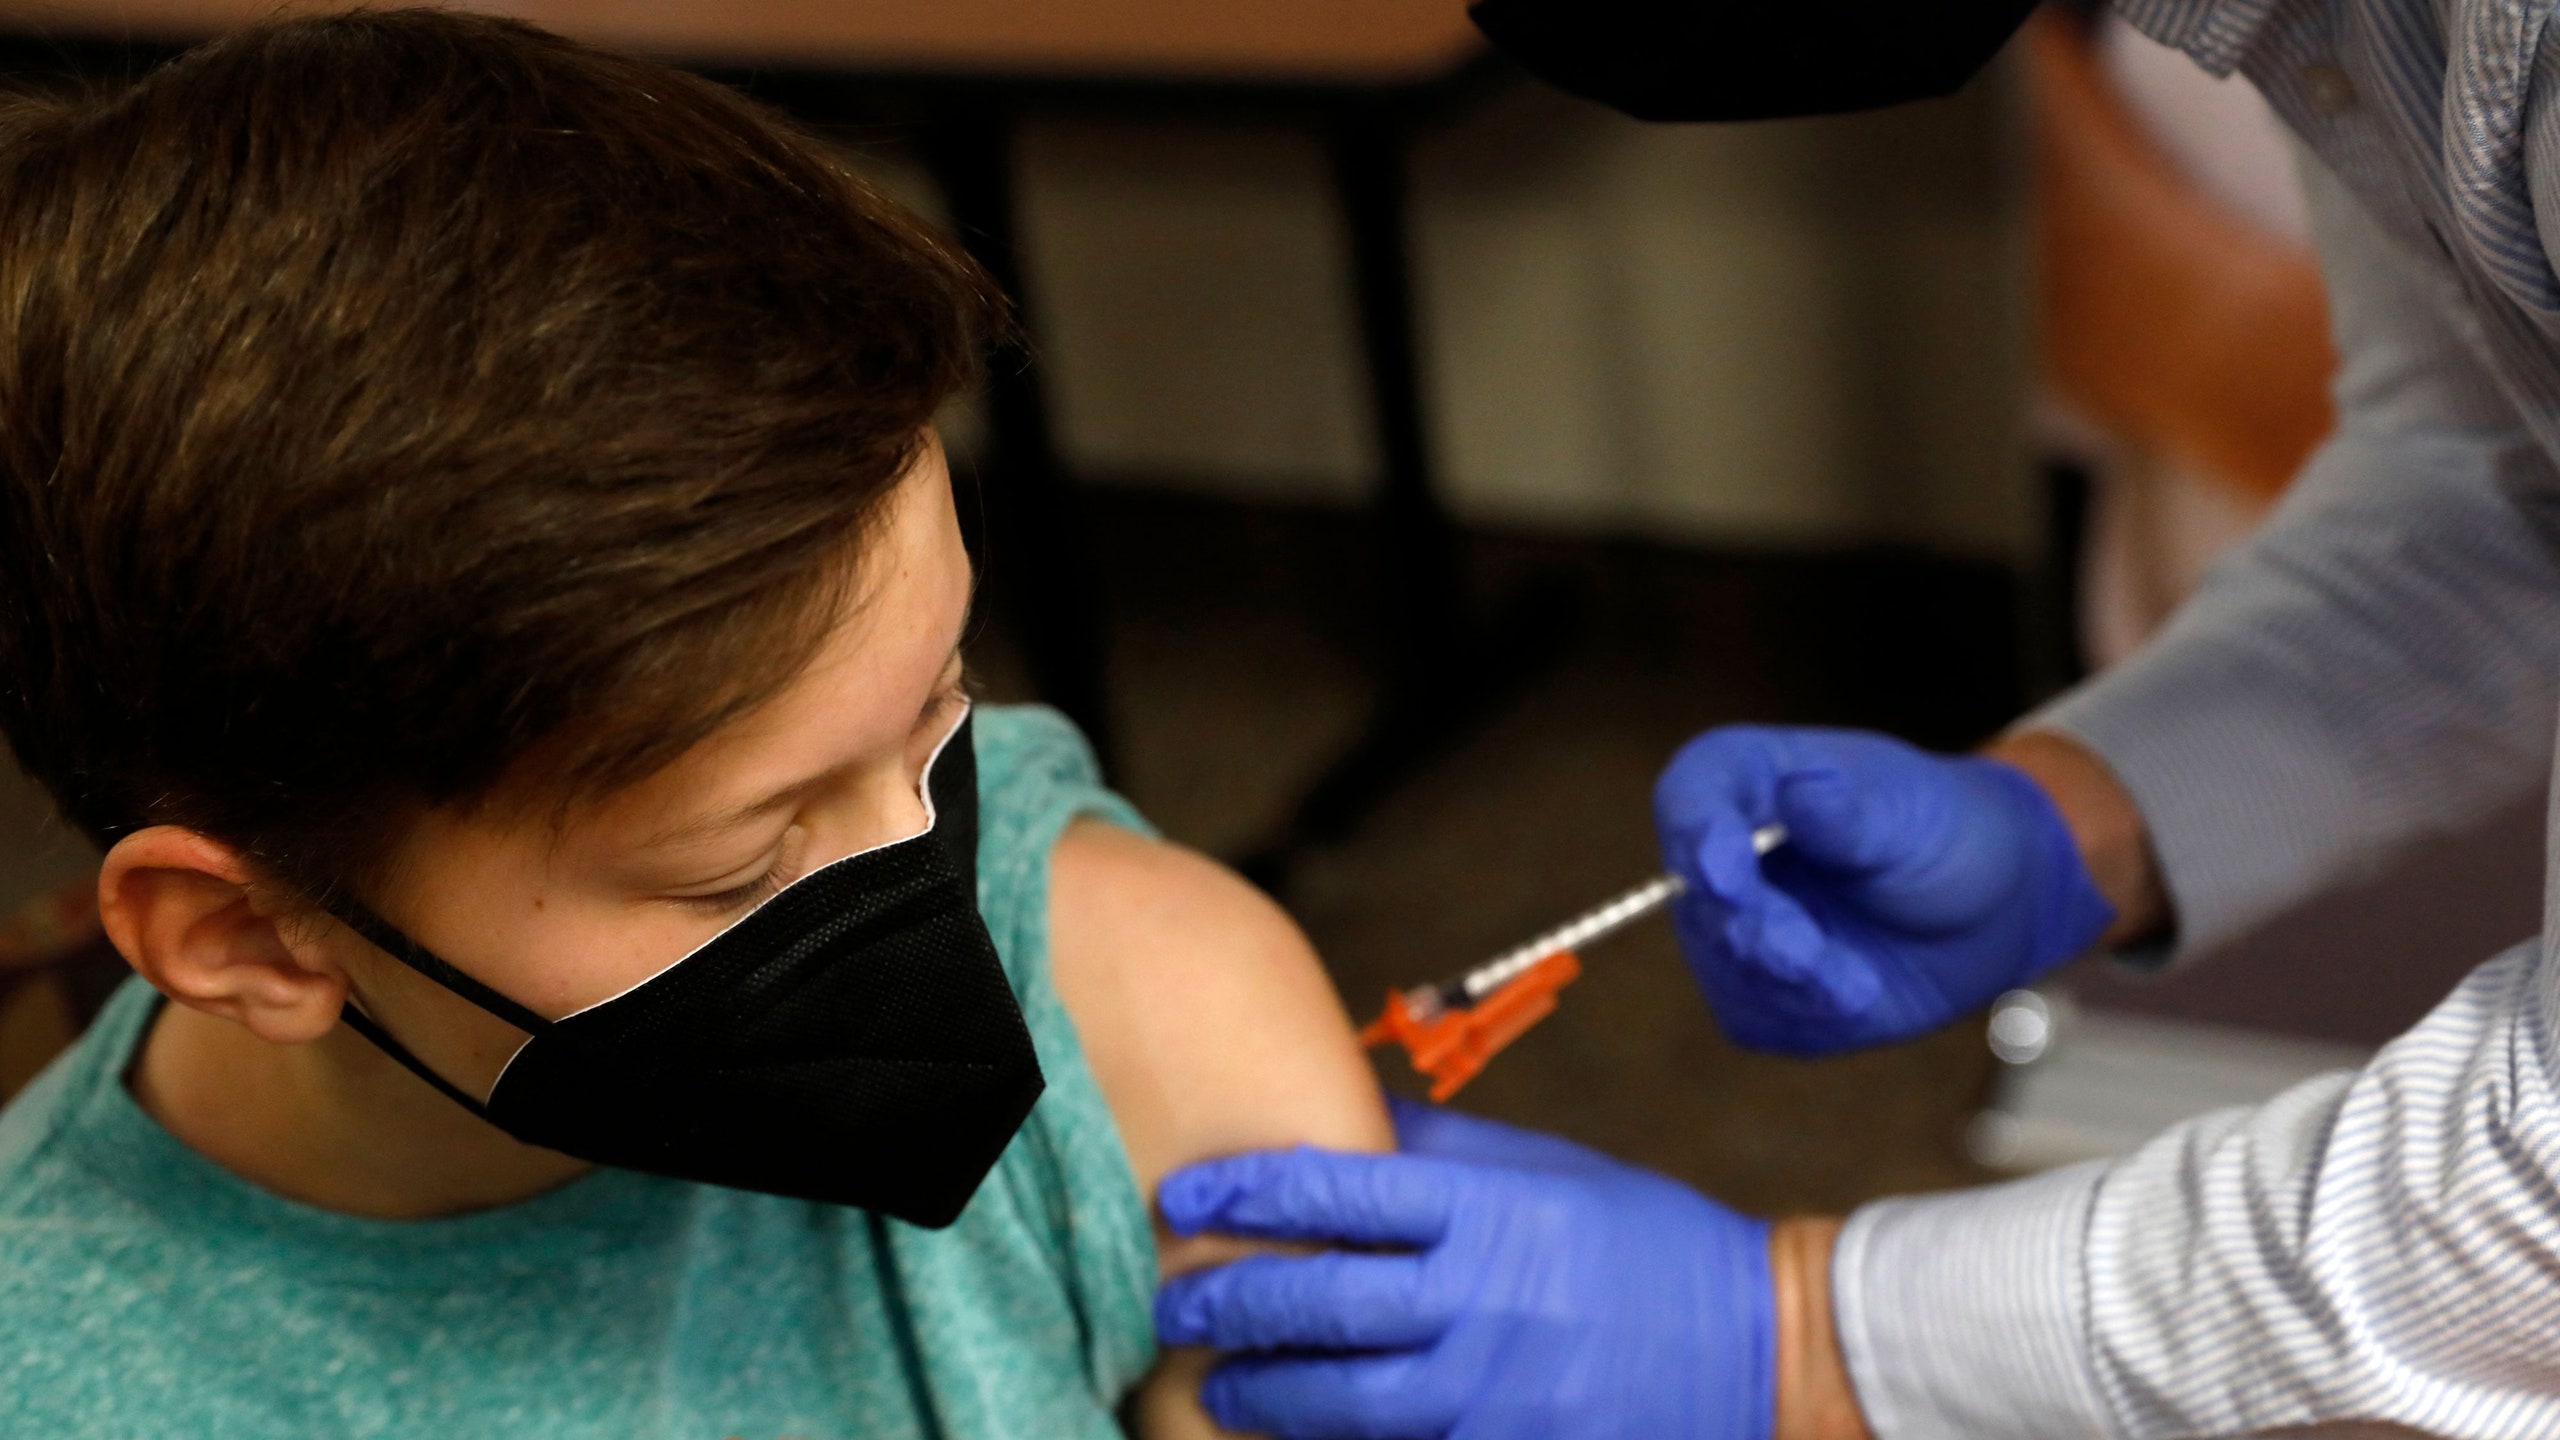 Il virologo Menichetti: "Non solo terze dosi, è il momento di vaccinare i bambini"